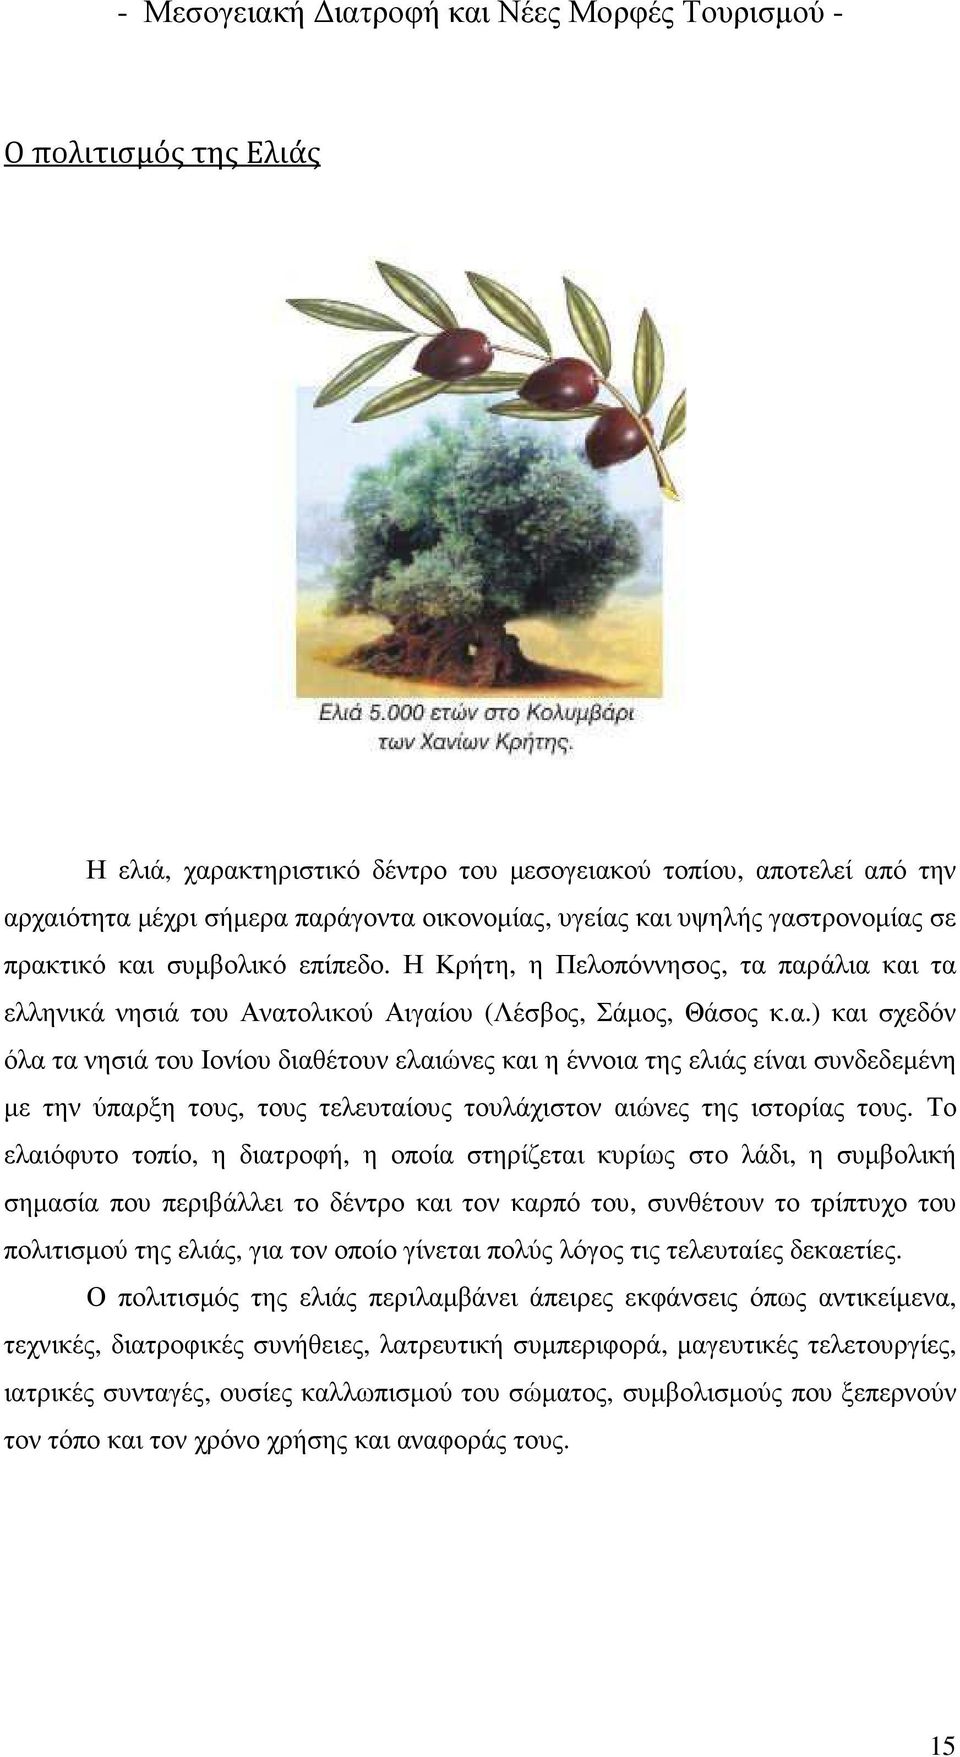 παράλια και τα ελληνικά νησιά του Ανατολικού Αιγαίου (Λέσβος, Σάµος, Θάσος κ.α.) και σχεδόν όλα τα νησιά του Ιονίου διαθέτουν ελαιώνες και η έννοια της ελιάς είναι συνδεδεµένη µε την ύπαρξη τους, τους τελευταίους τουλάχιστον αιώνες της ιστορίας τους.